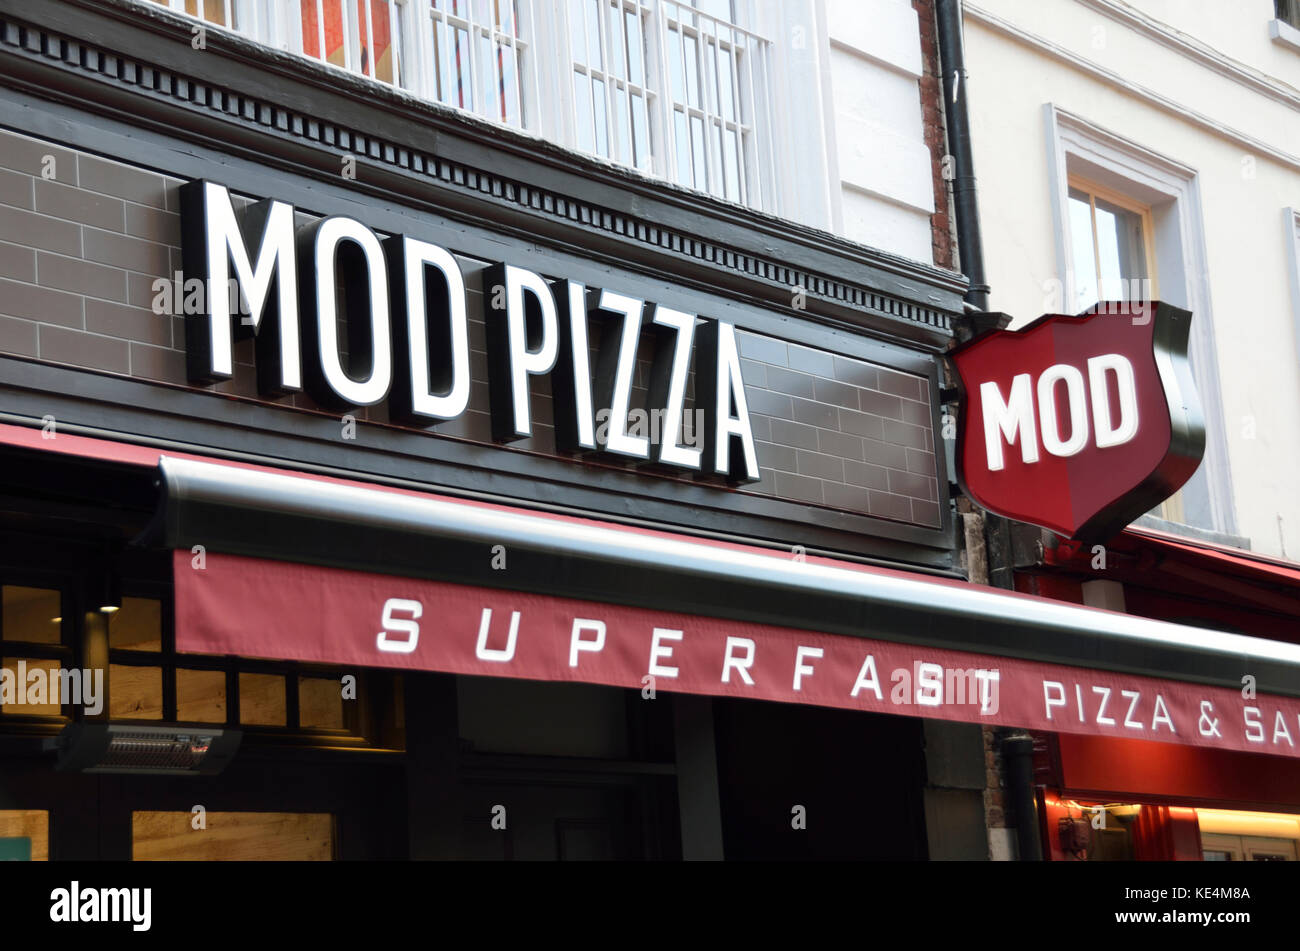 Des plats à emporter Pizza Mod, Londres, Royaume-Uni. Banque D'Images